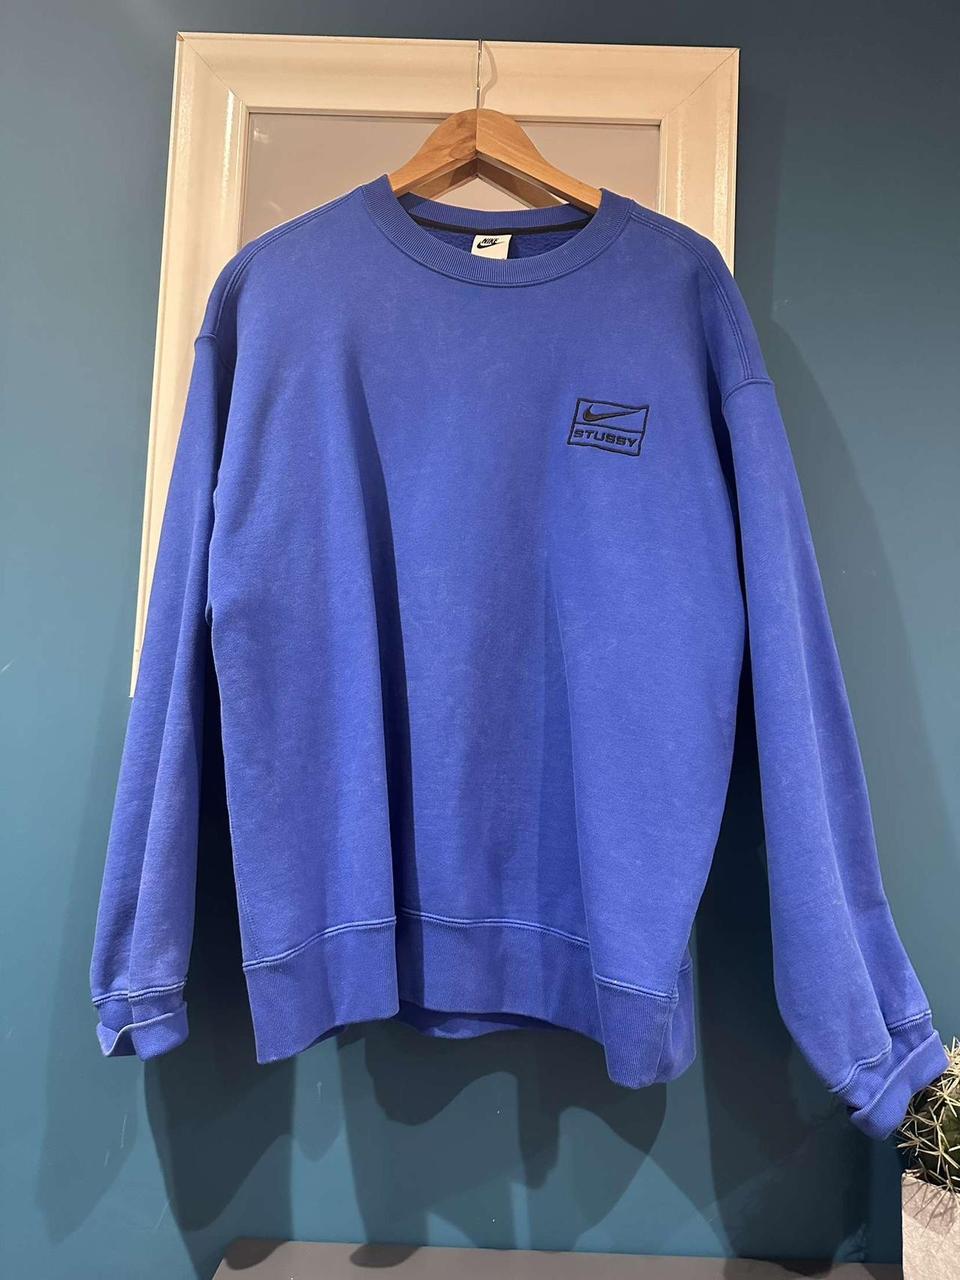 Blue stussy nike sweatshirt - size large Oversized... - Depop